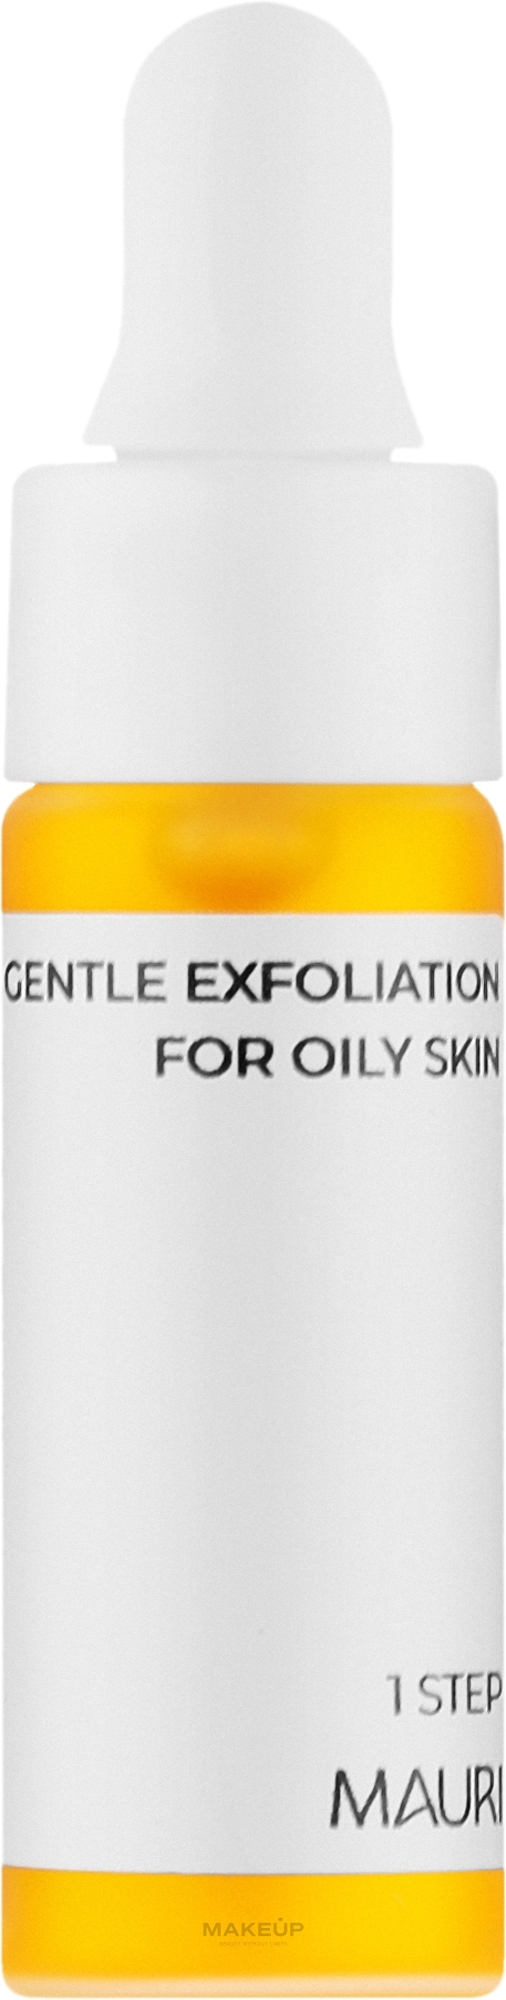 М'який пілінг для жирної шкіри обличчя - Mauri Gentle Exfoliation For Oily Skin (міні) — фото 5ml